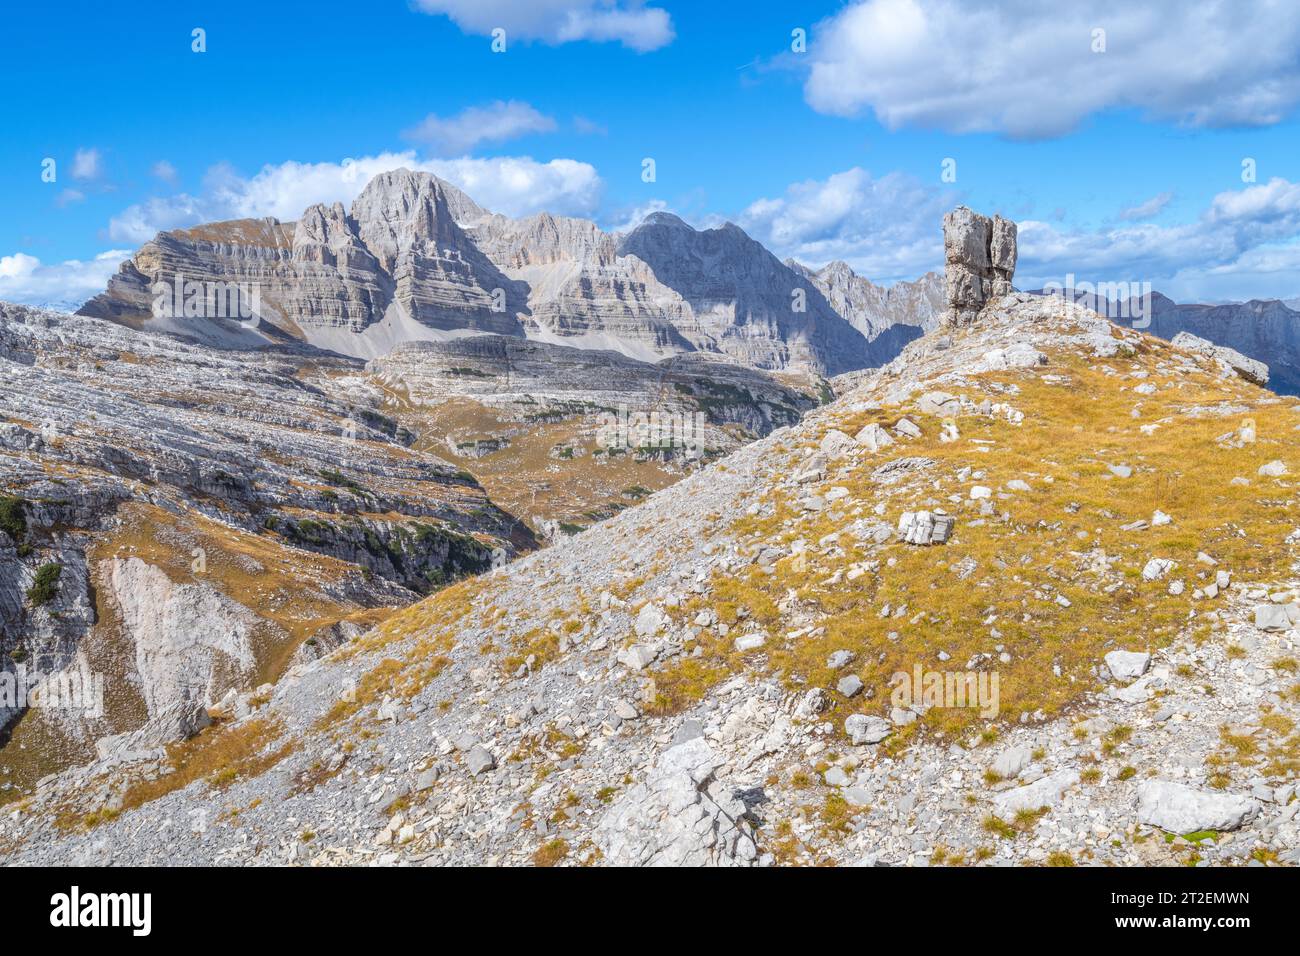 Grand rocher de calcaire autoportant contre la chaîne de montagnes stratifiées dans les Dolomites de Brenta en Italie, saison d'automne Banque D'Images